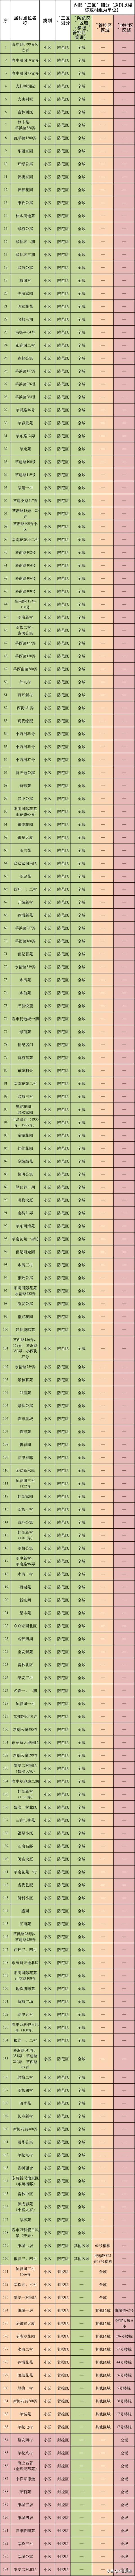 闵行区划三区名单明细,上海闵行区三区划定名单最新(1)